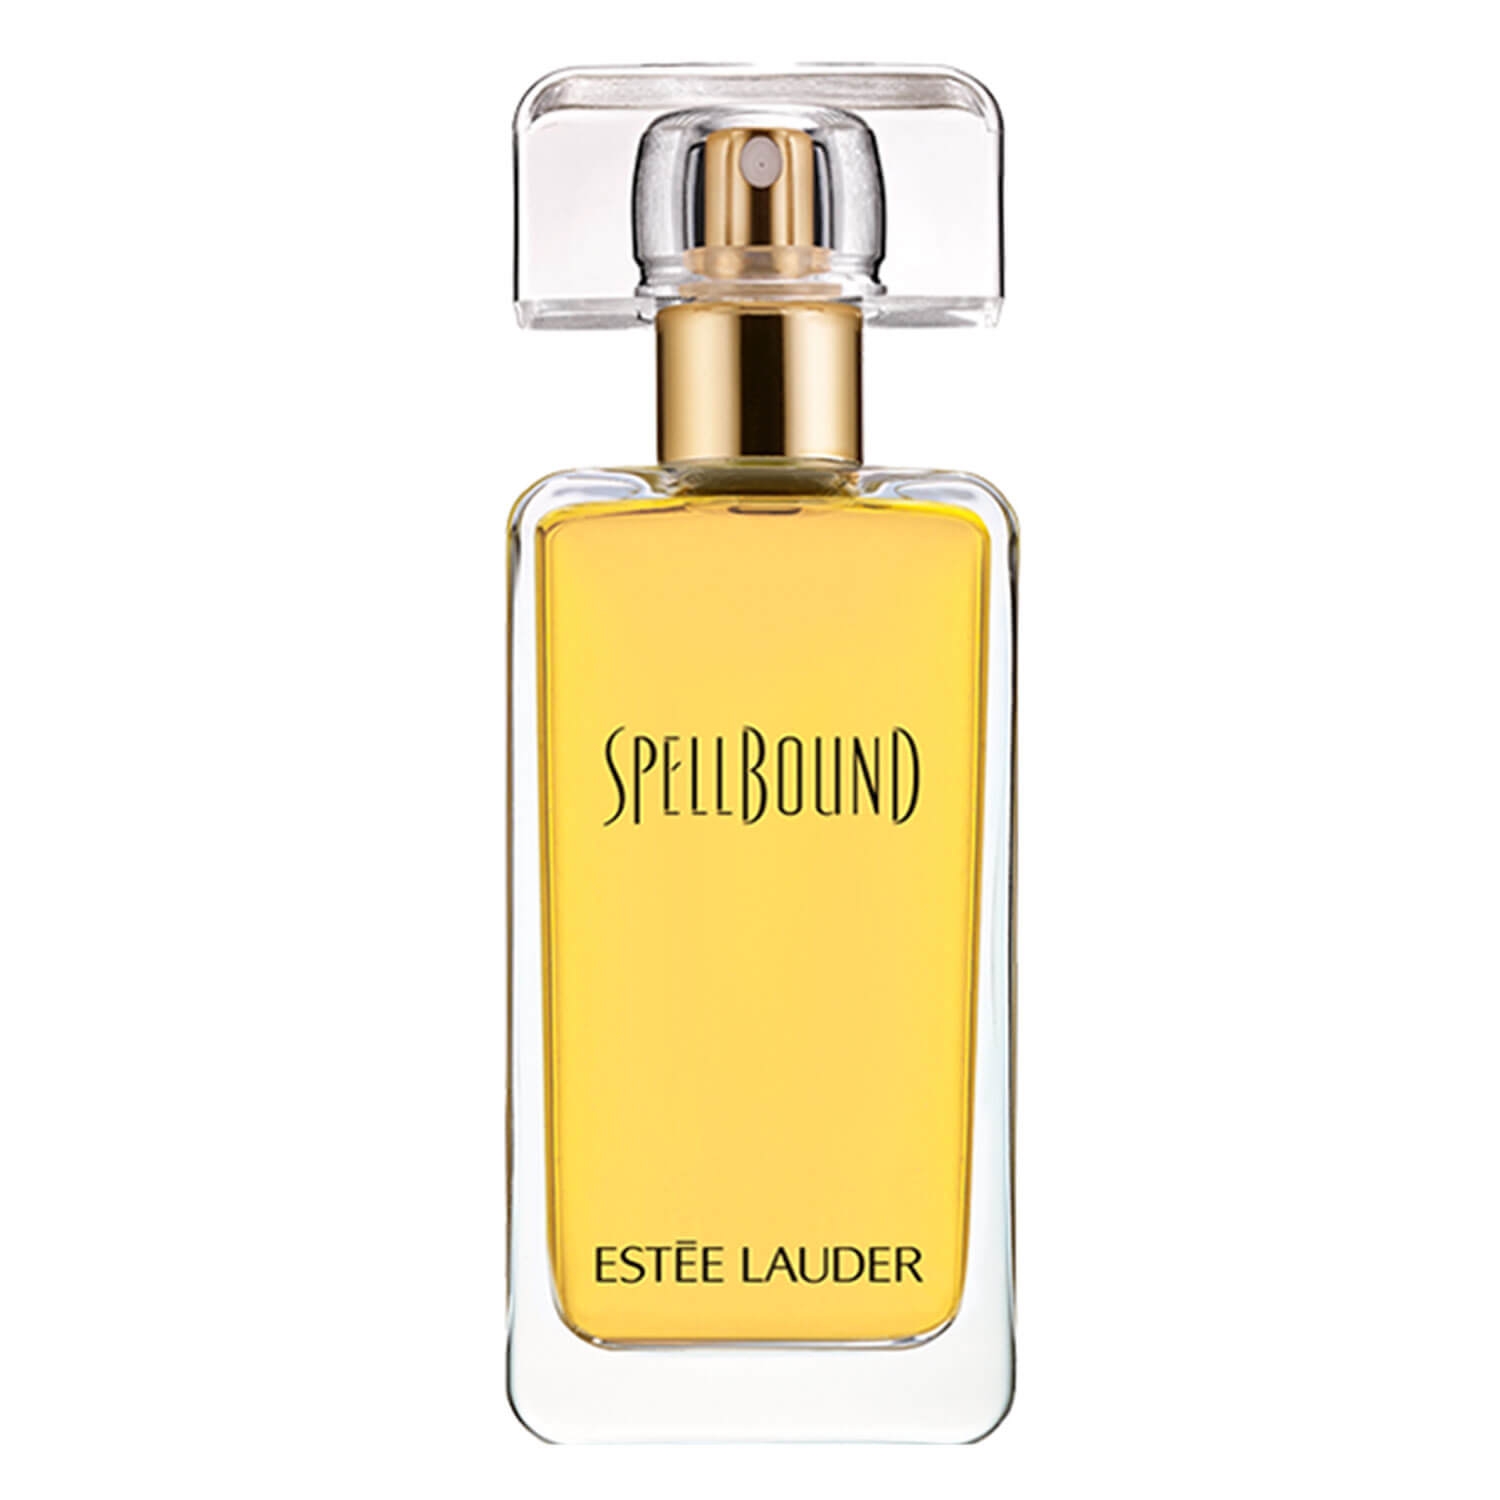 Produktbild von Classic Parfums - Spellbound Eau de Parfum Spray